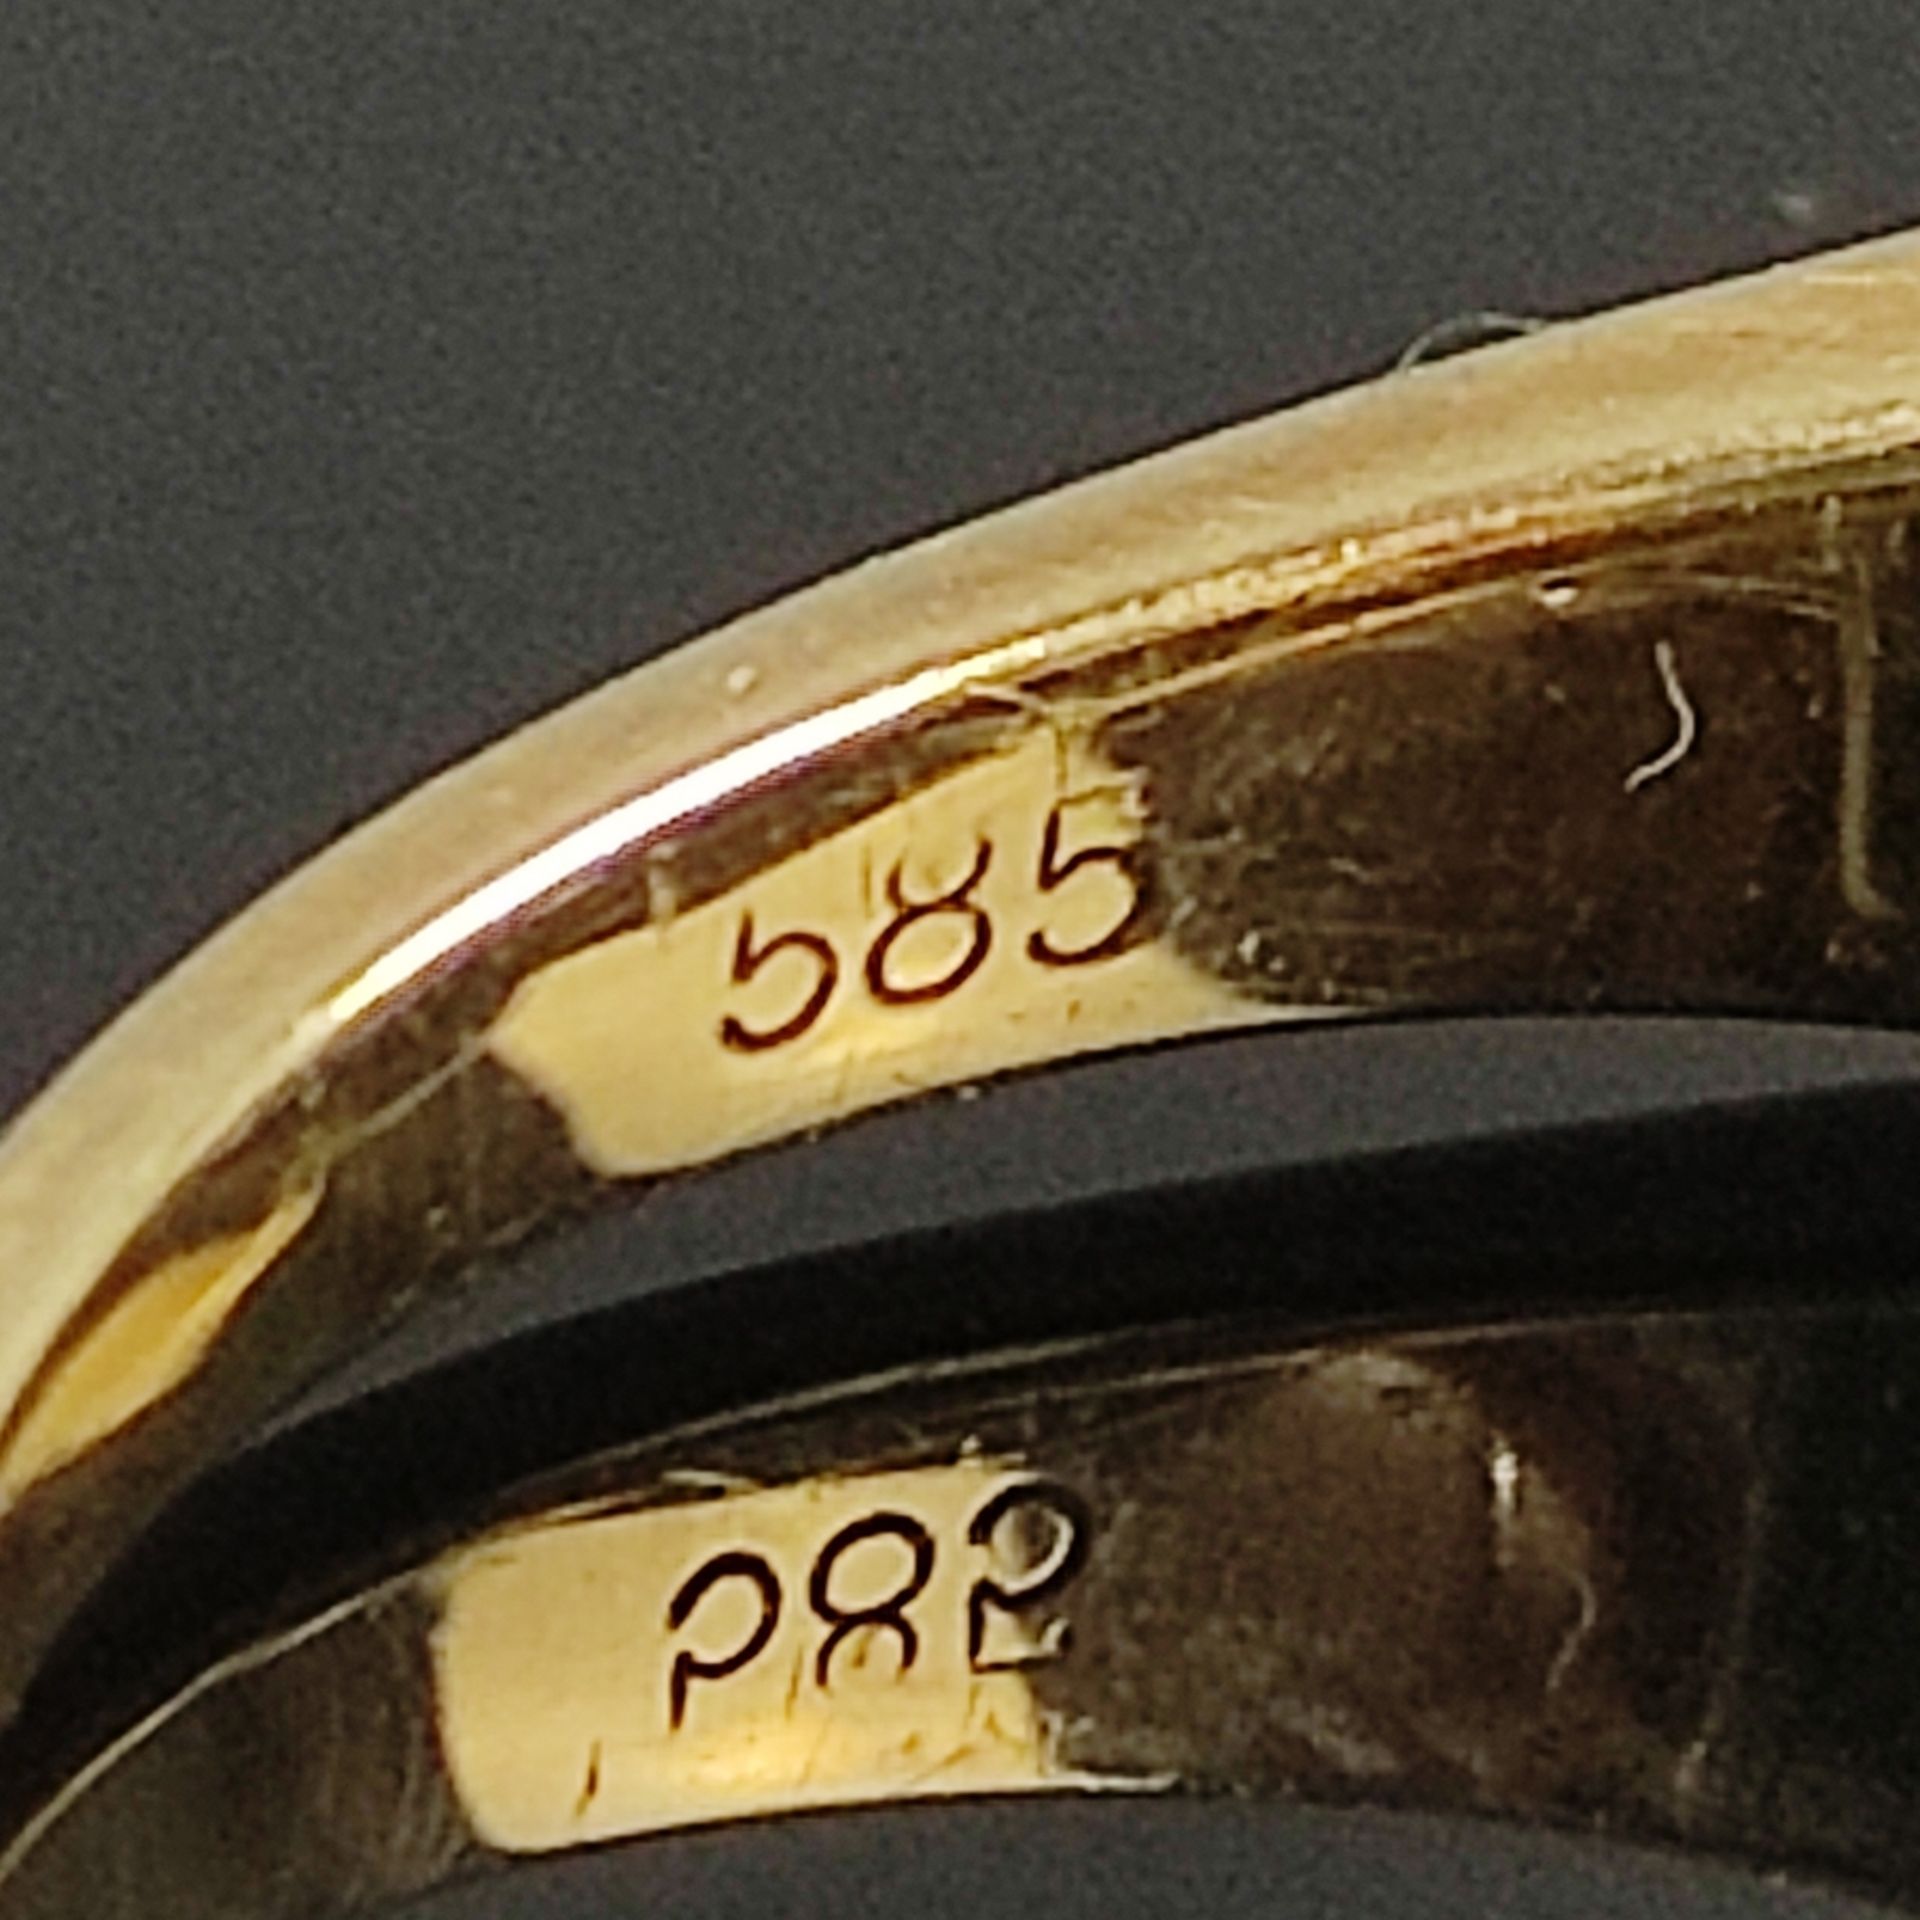 Akoya-Perl-Goldring, 585/14K Gelbgold, Gesamtgewicht 3,3g, mittig besetzt mit echter weißer Salzwas - Bild 3 aus 3